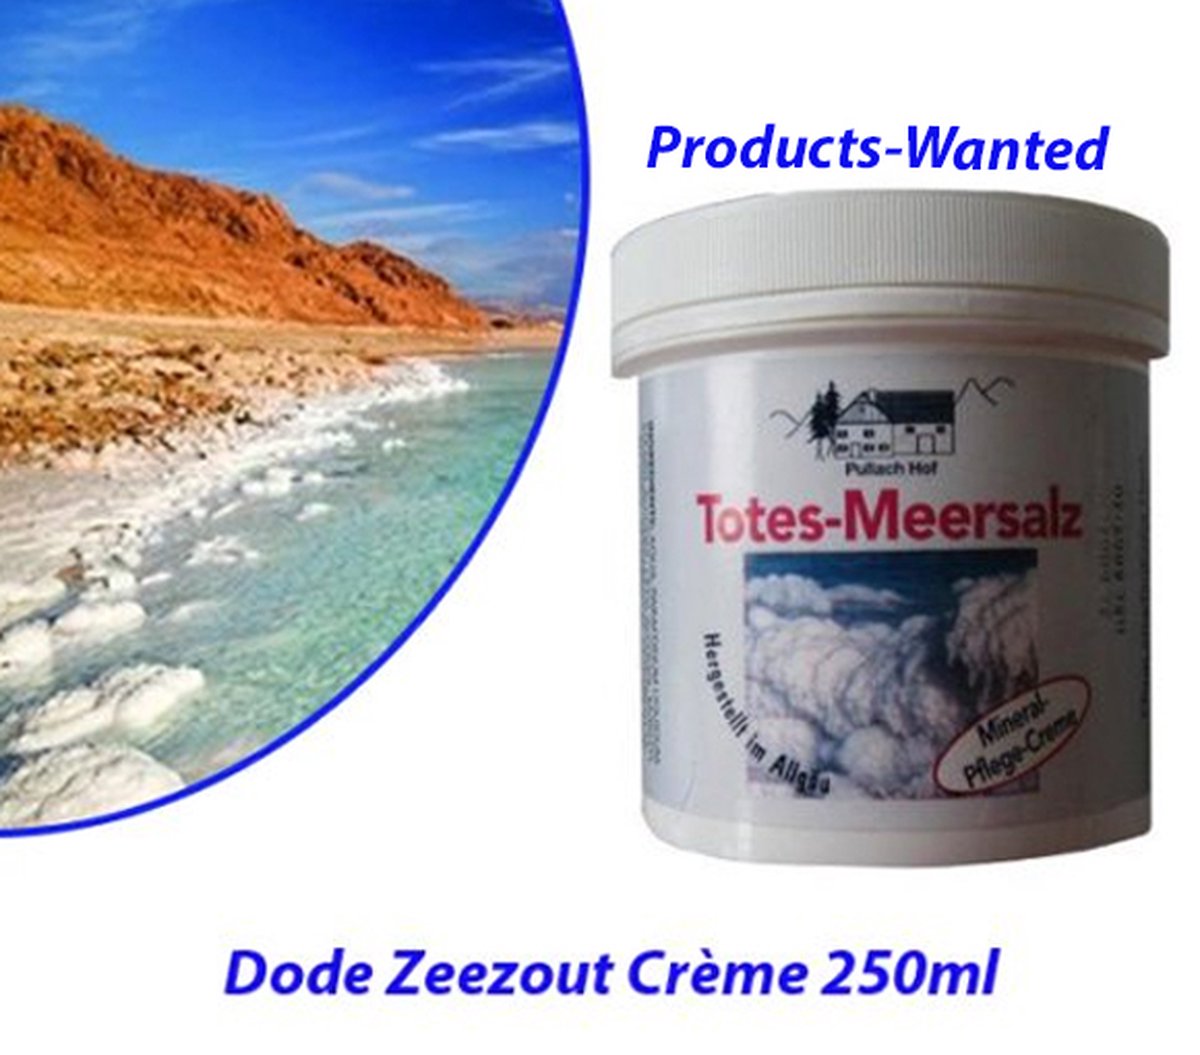 2-Potten Dode Zeezout Crème 250ml